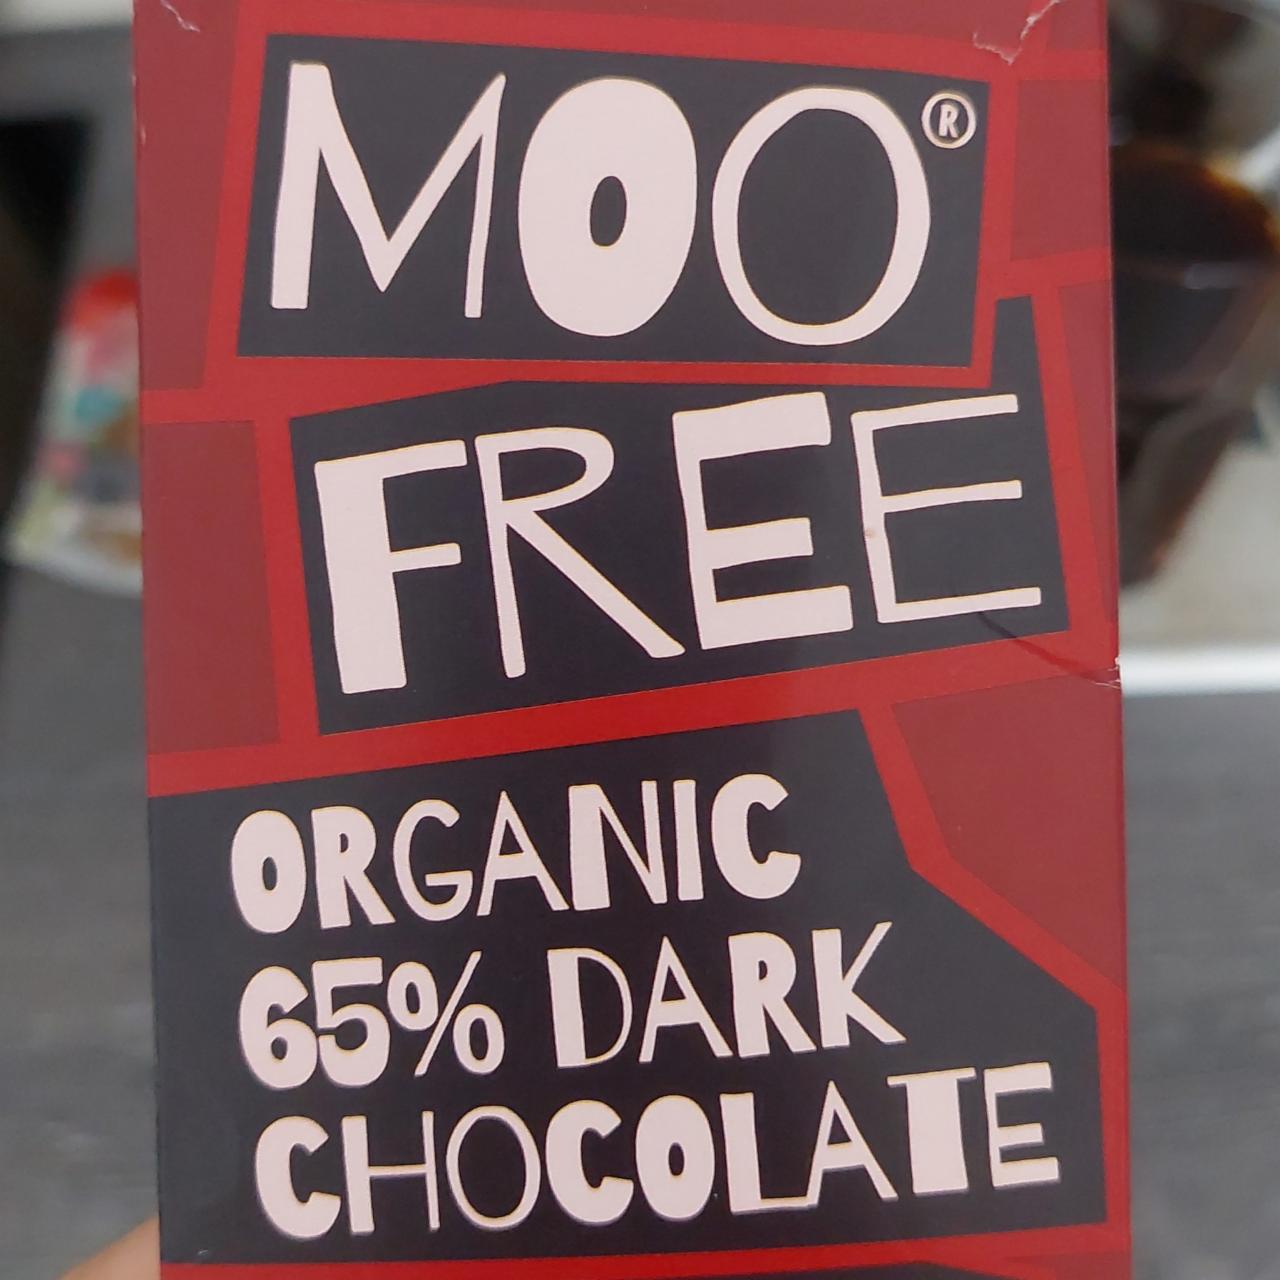 Fotografie - Organic 65% dark chocolate Moo Free